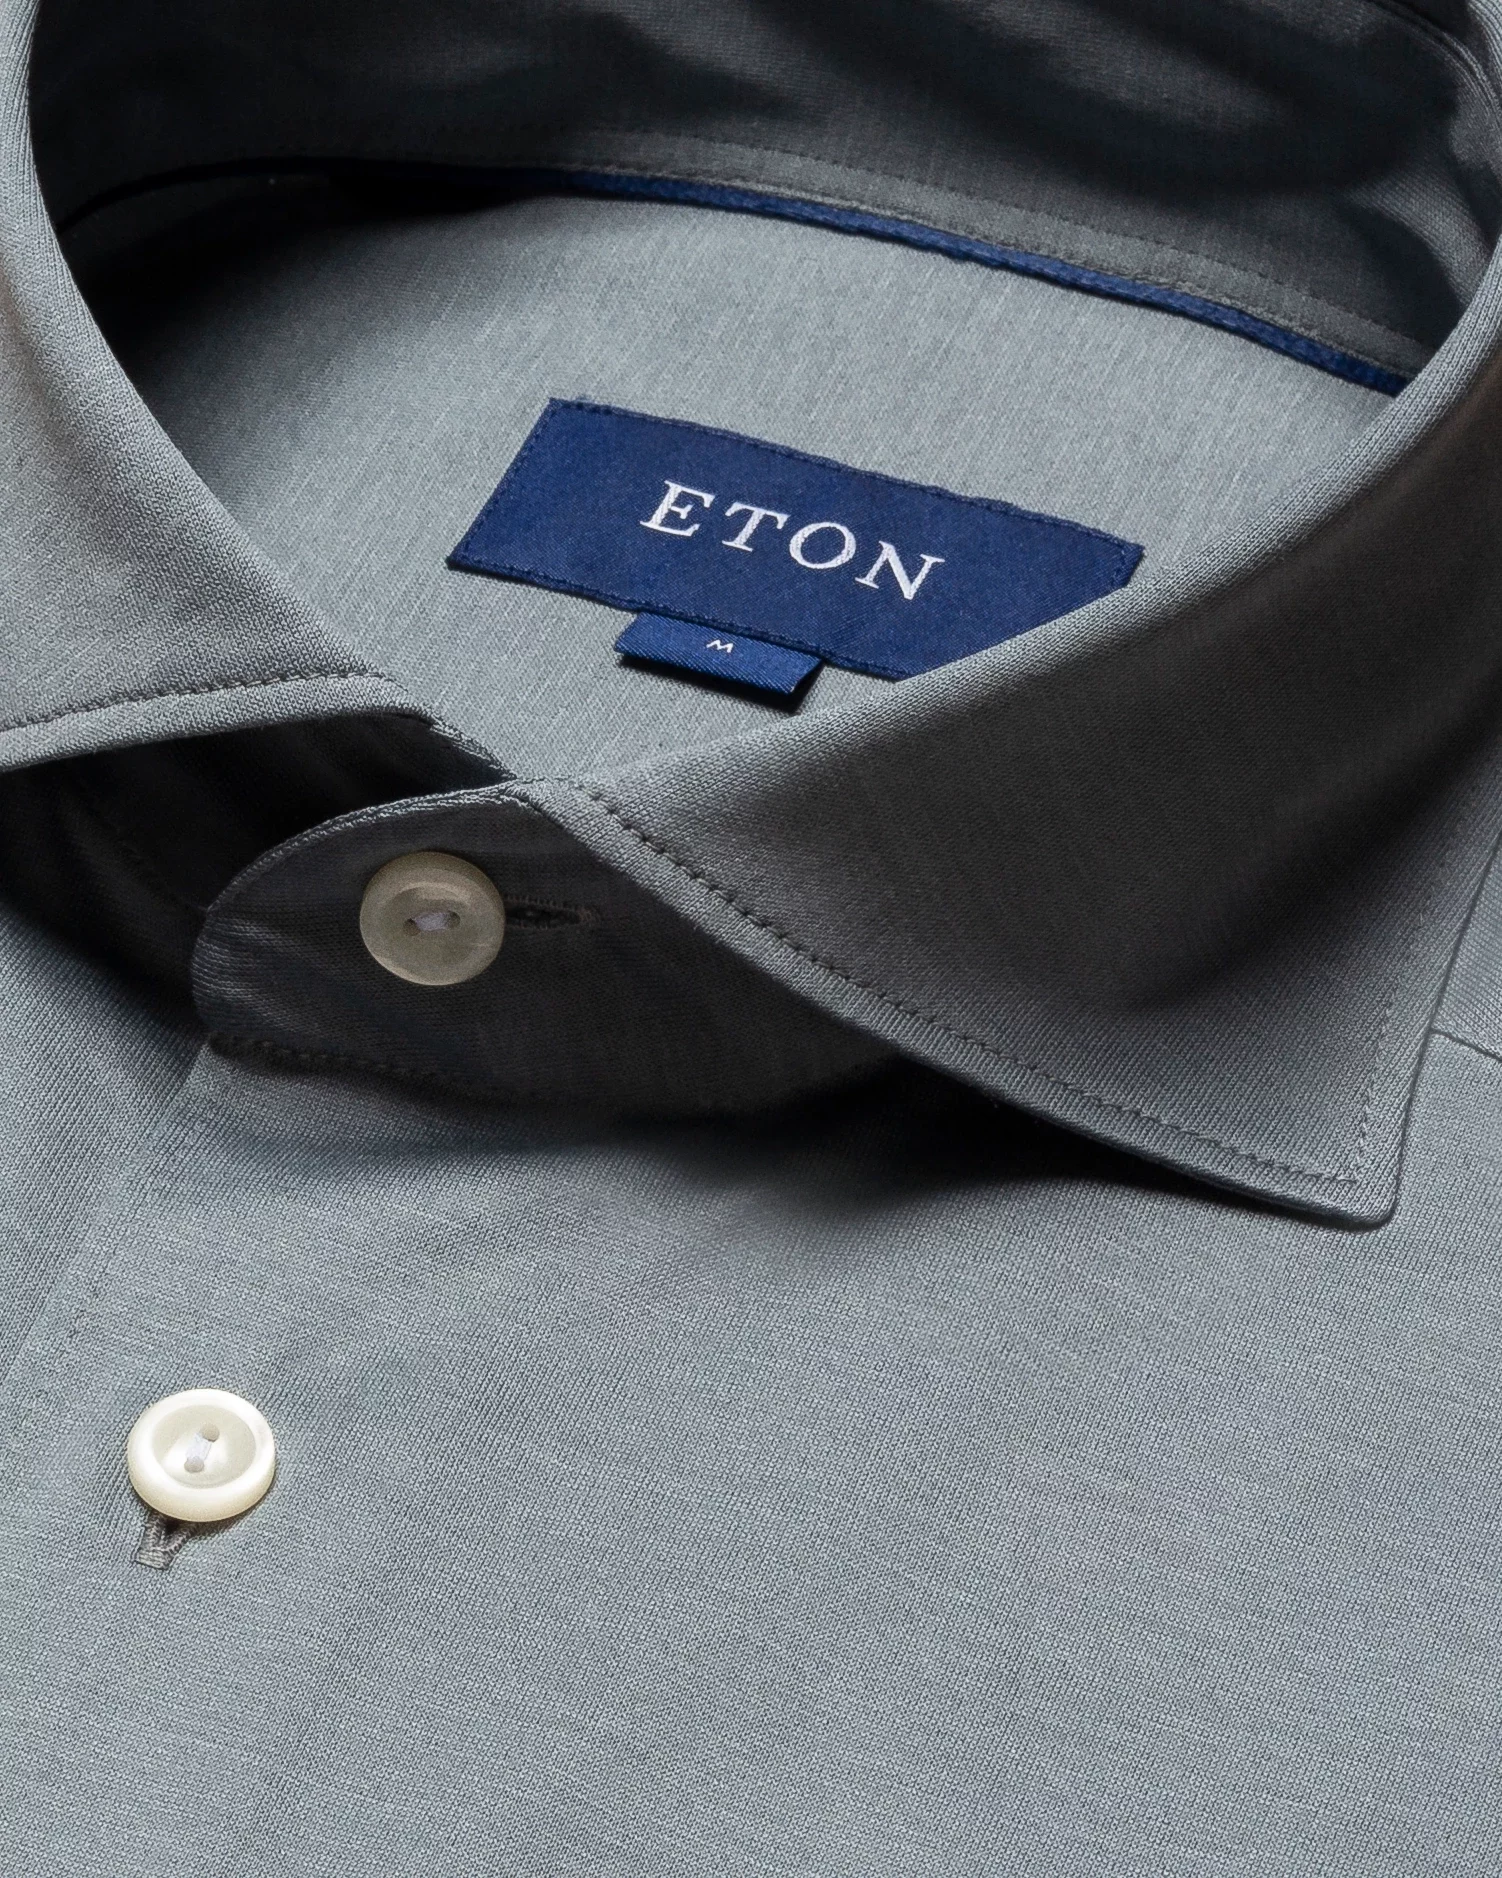 Eton - grey jersey wide spread